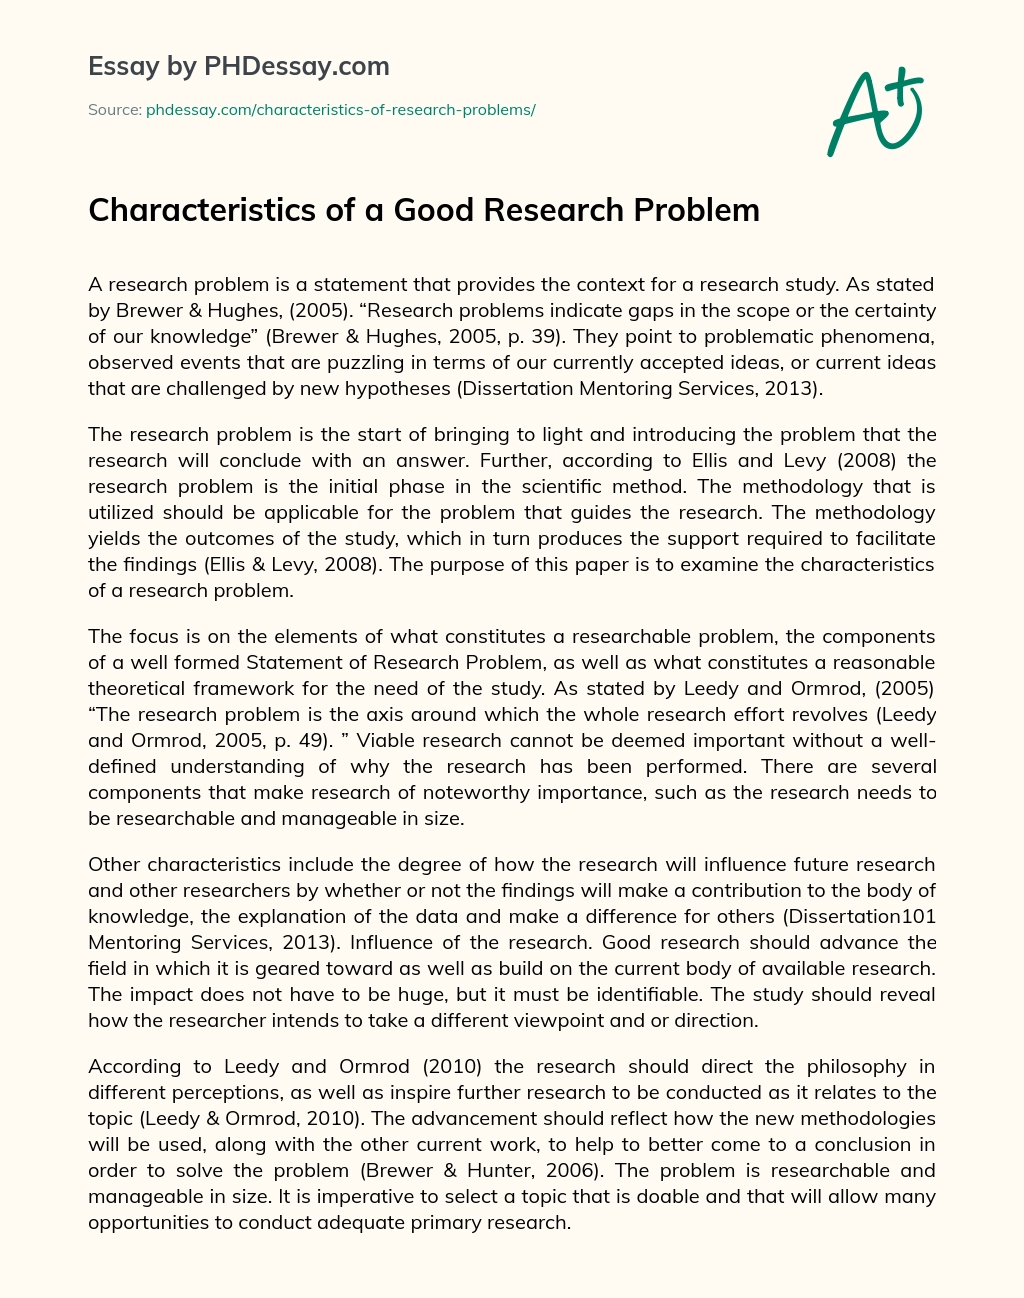 Characteristics of a Good Research Problem essay